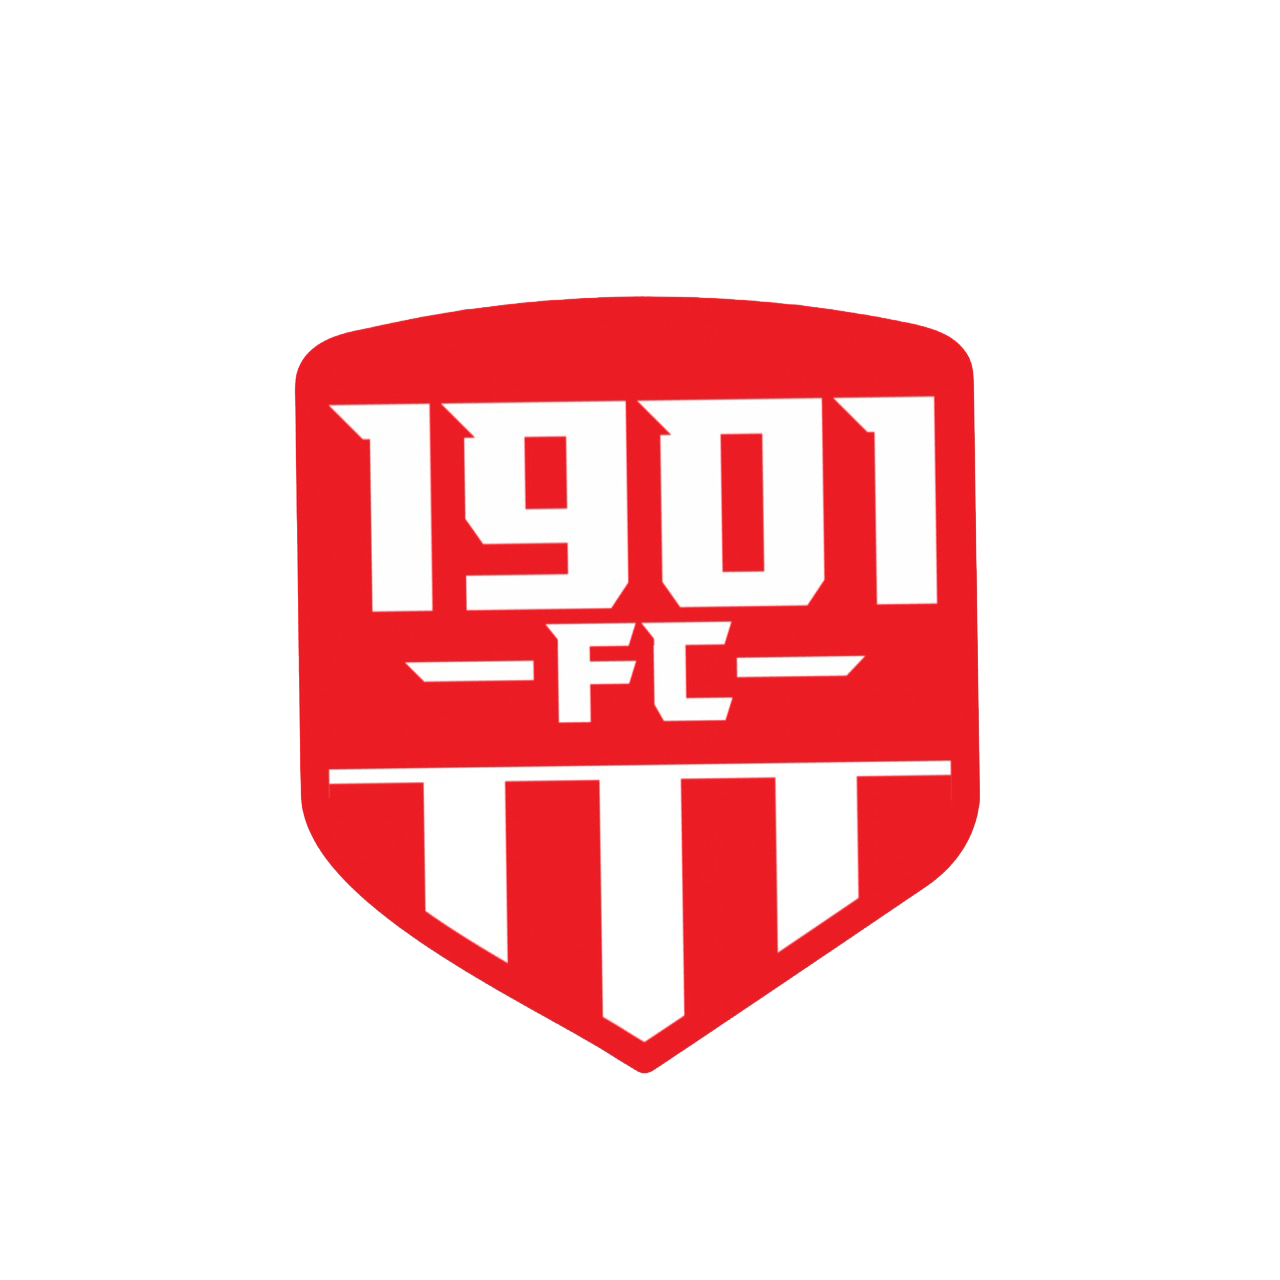 1901 FC